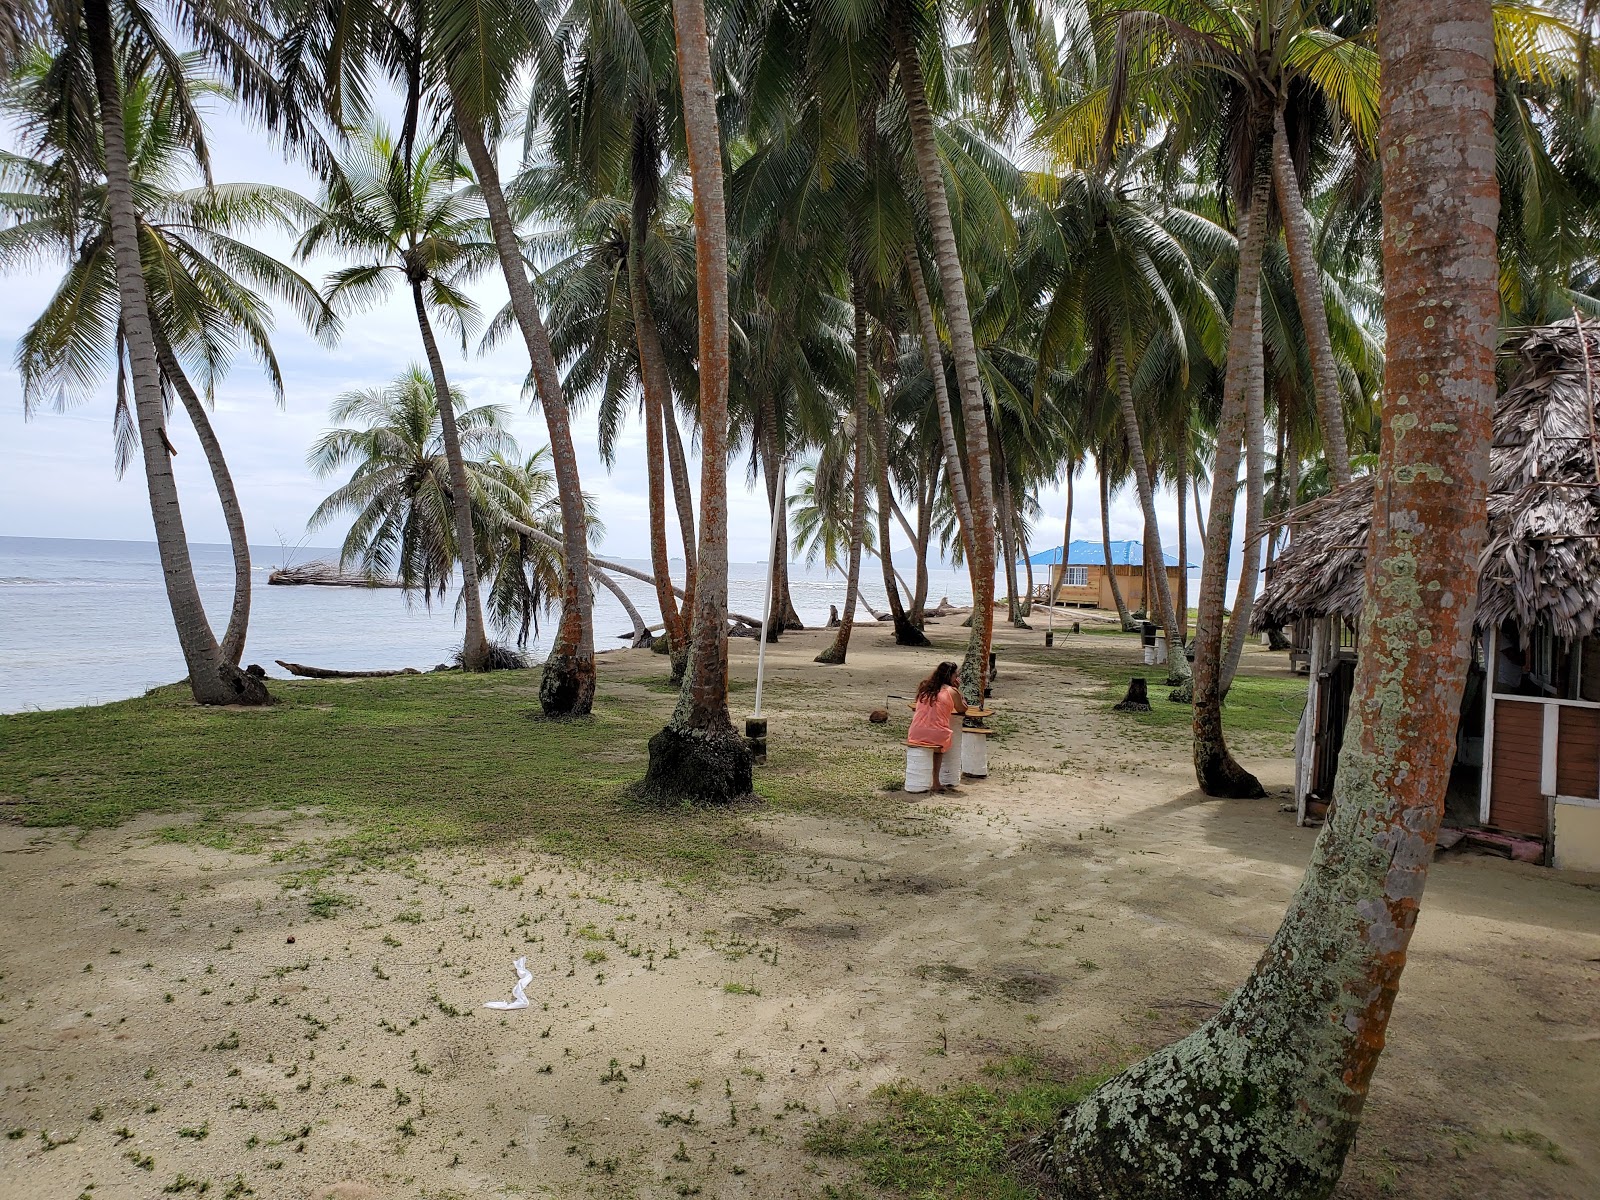 Fotografie cu Guna Yala Gulf island amplasat într-o zonă naturală